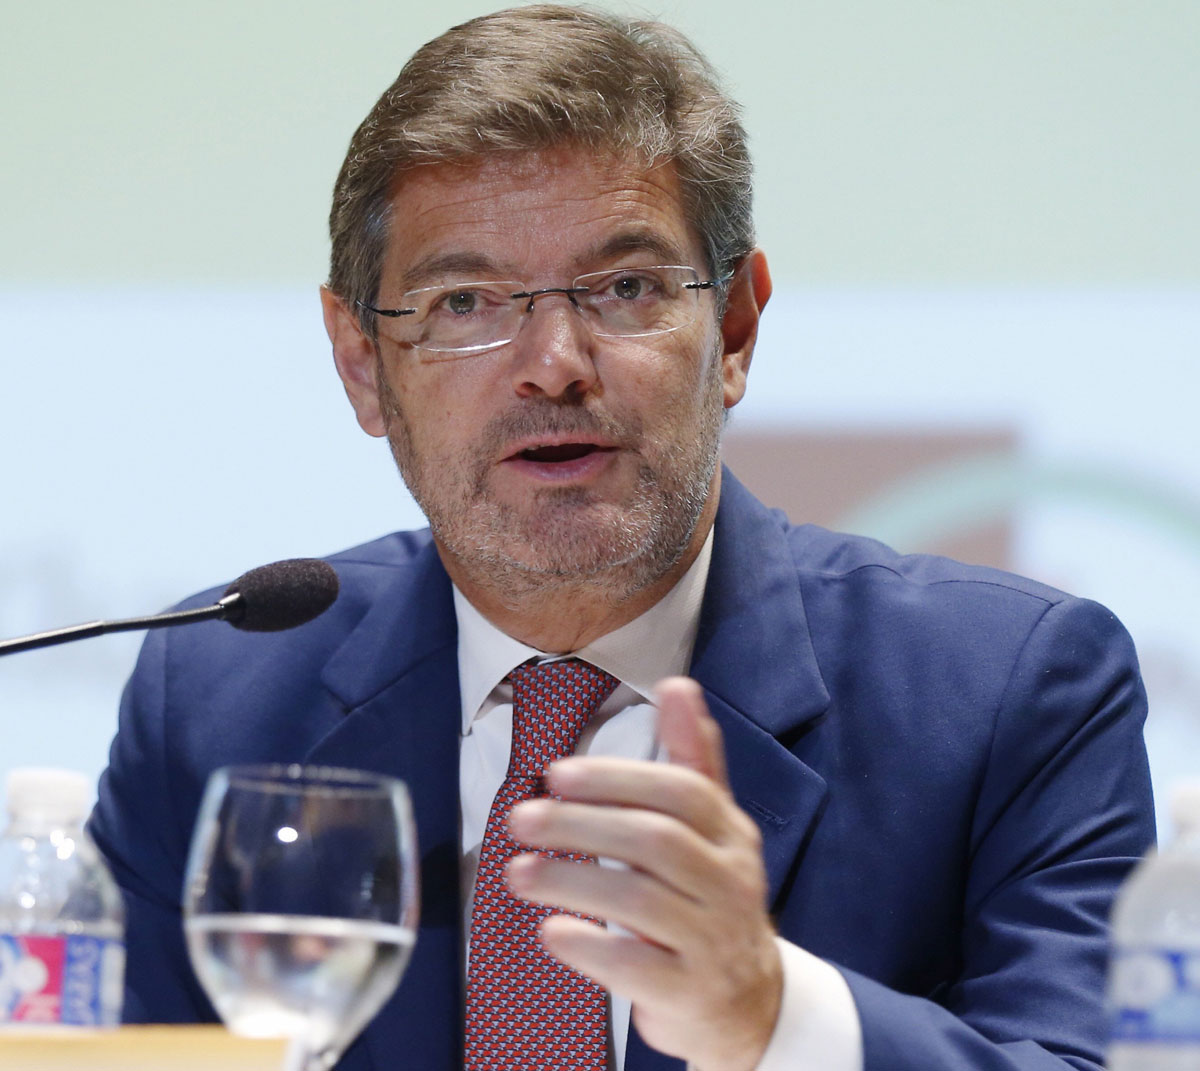 El ministro de Justicia, Rafael Catala, critica la ética de Moix durante su intervención en la XIV Asamblea Nacional de Graduados Sociales